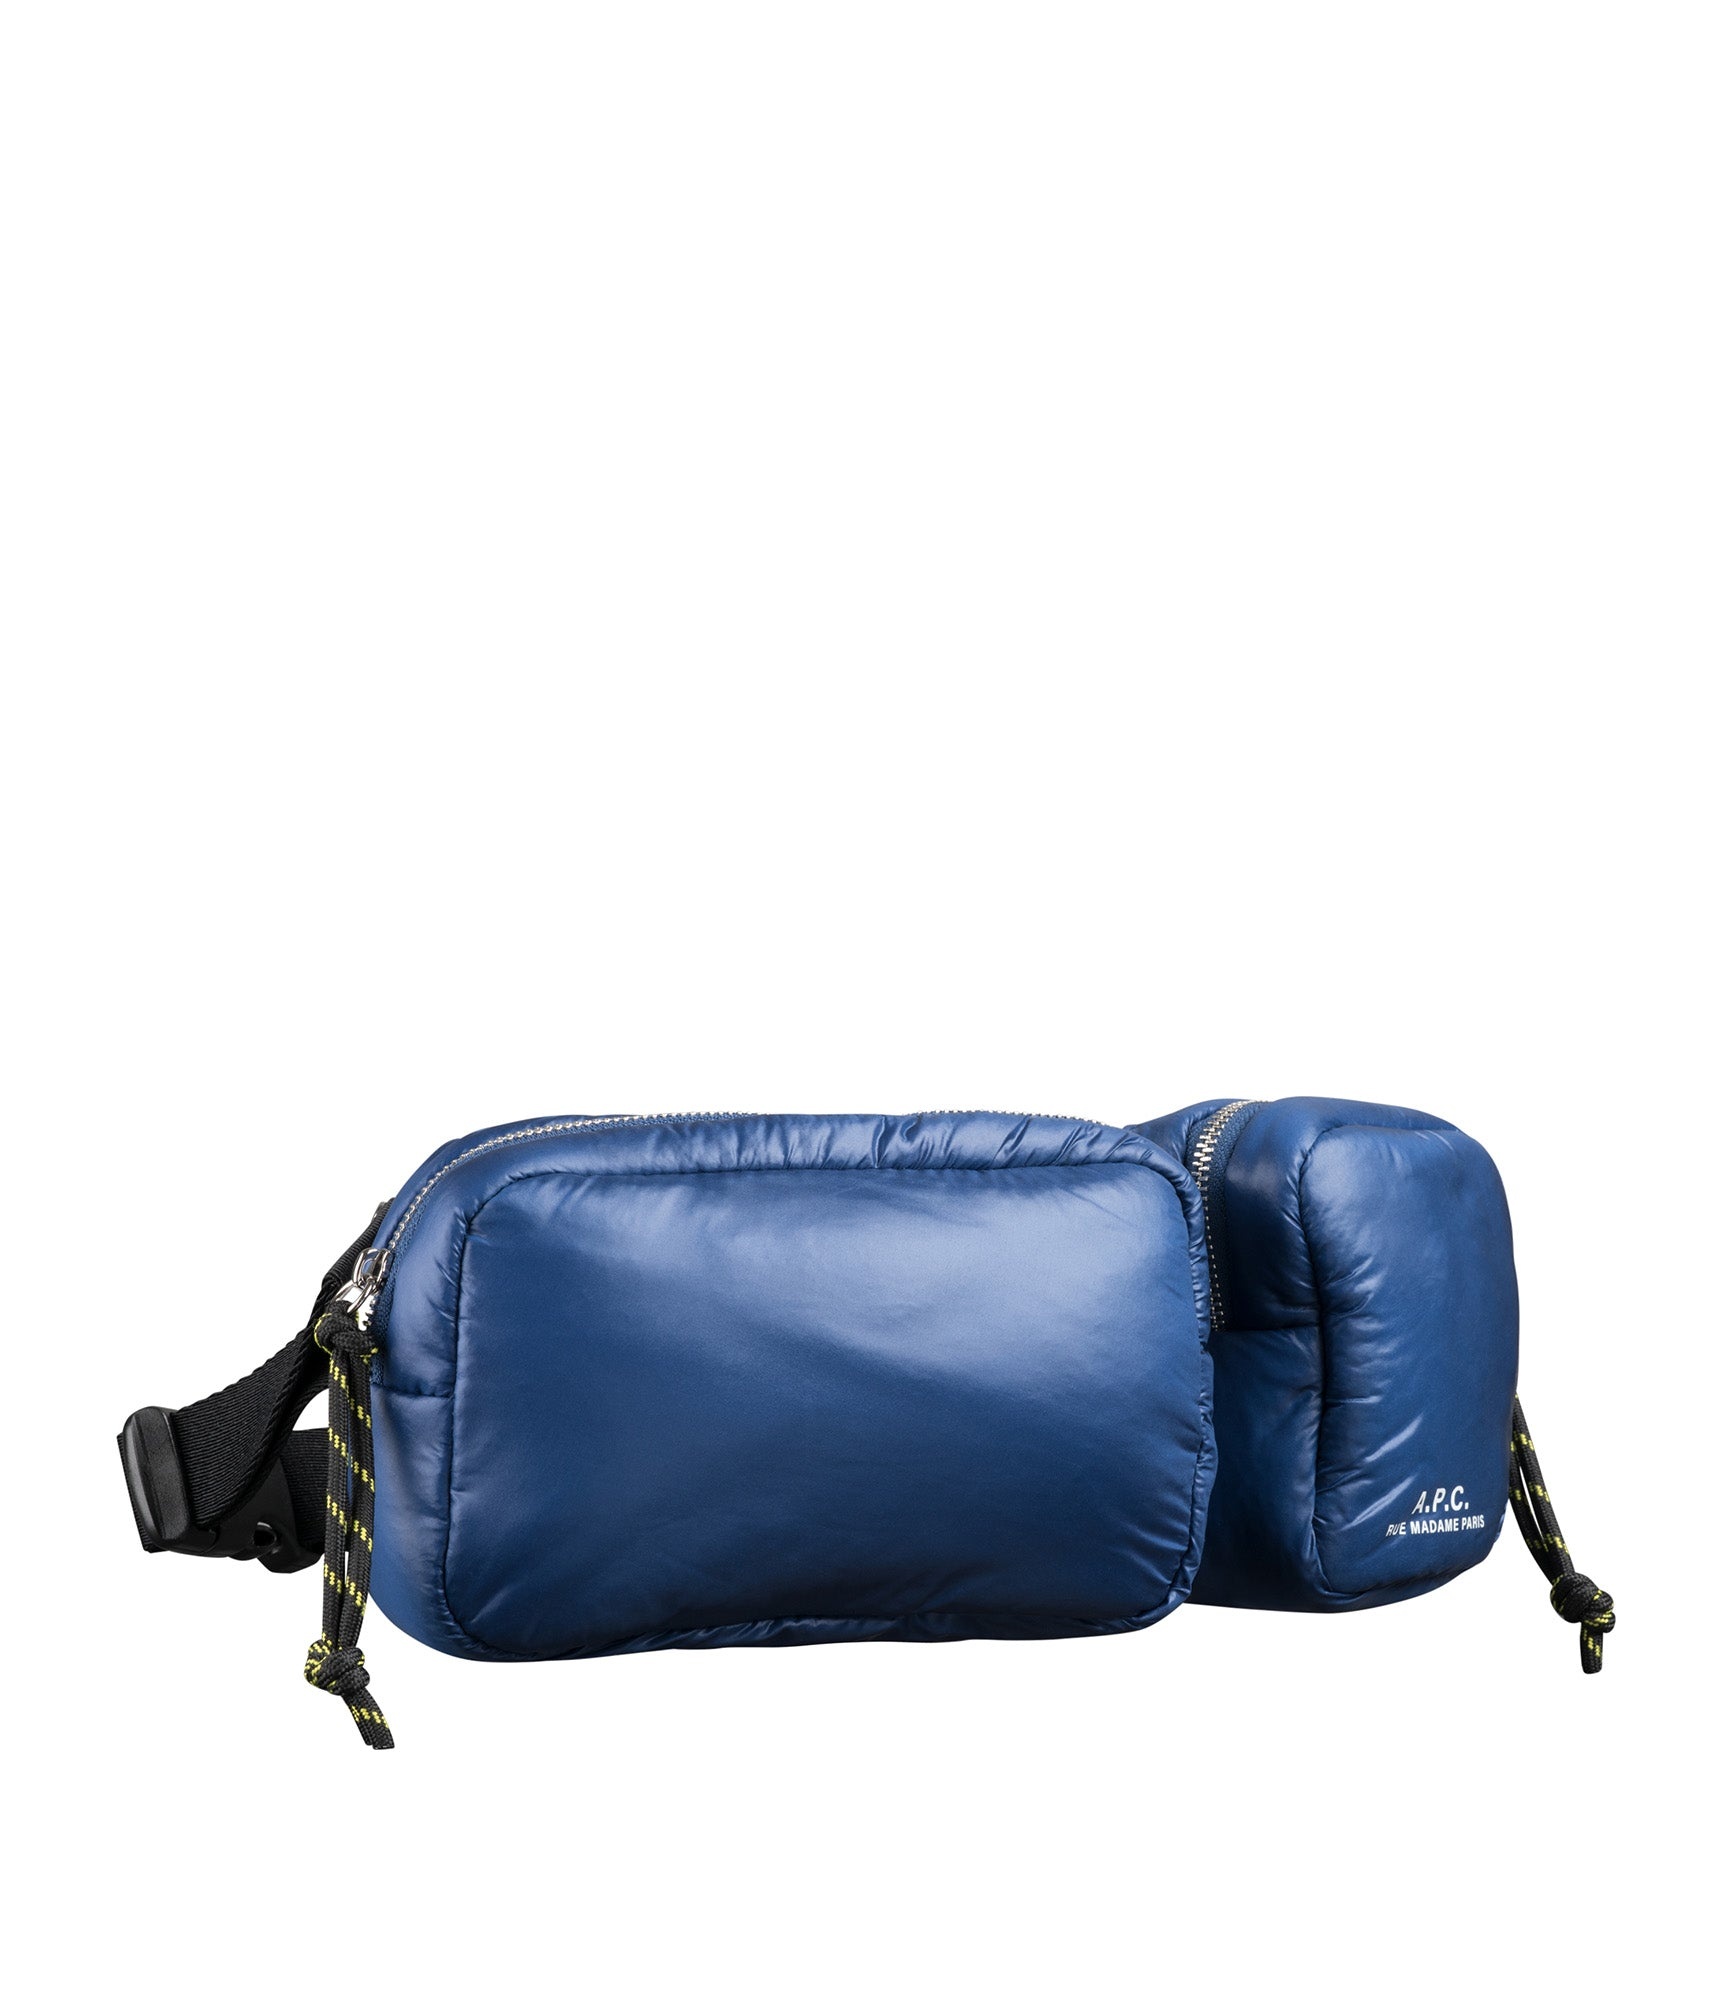 Puffy belt bag - 5